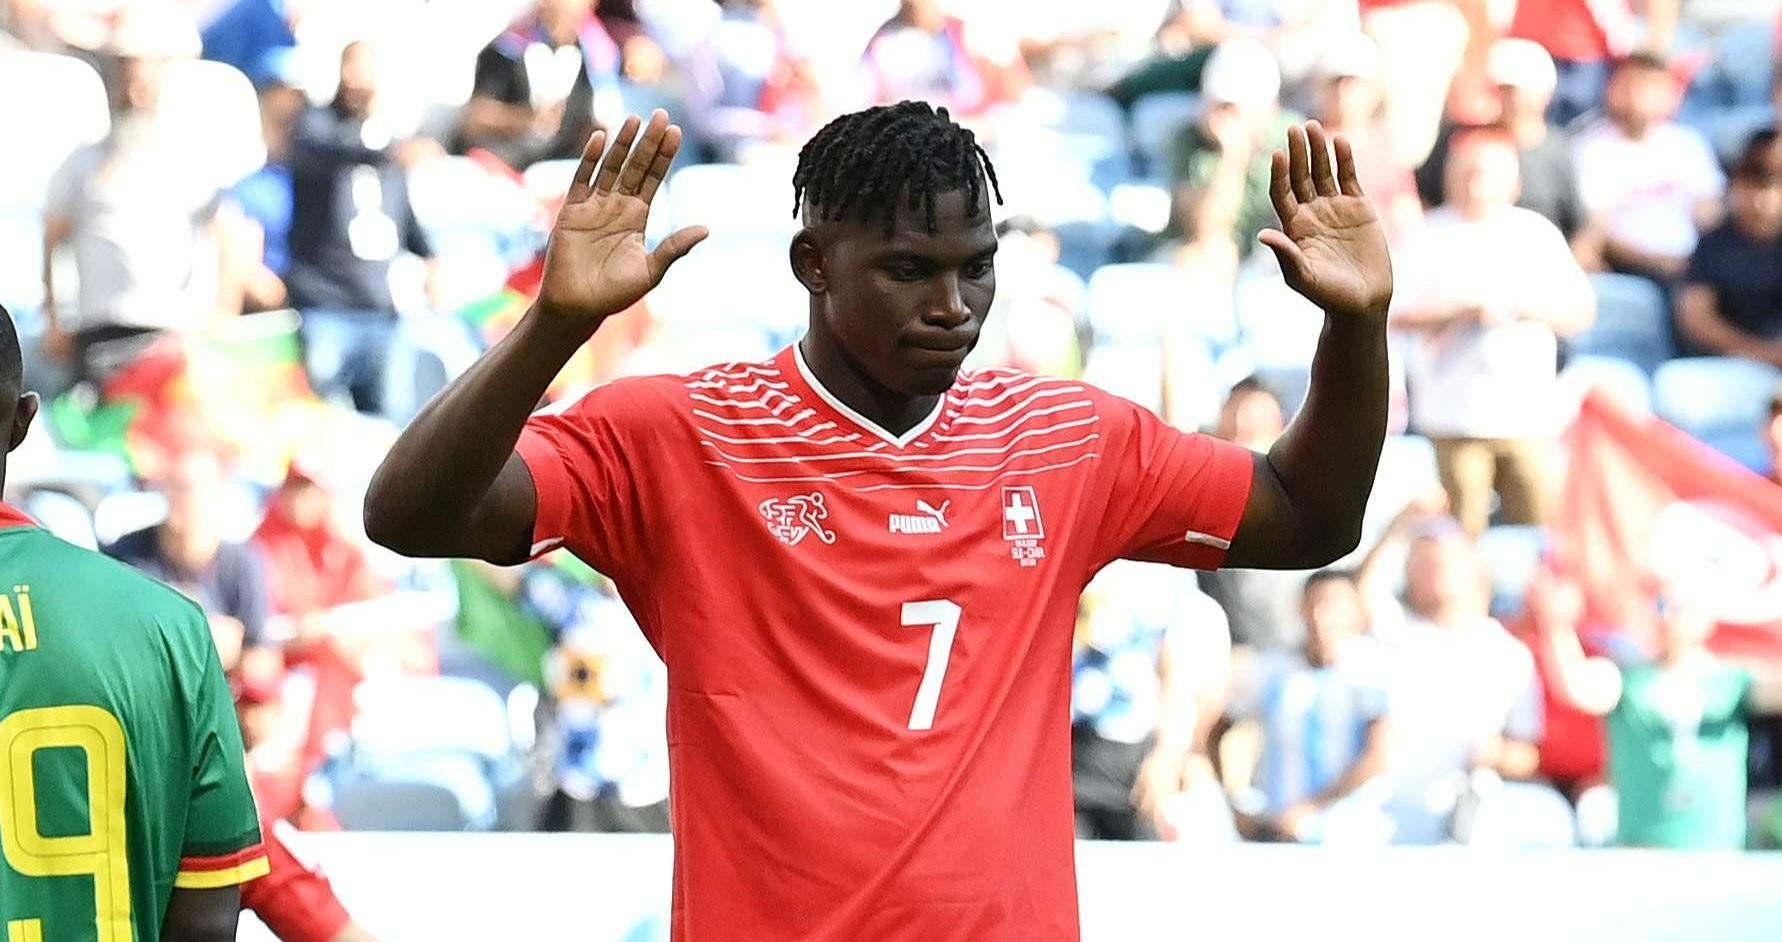 Striker Swiss Breel Embolo tak mau merayakan golnya ke gawang Kamerun karena di negara itu dia lahir.